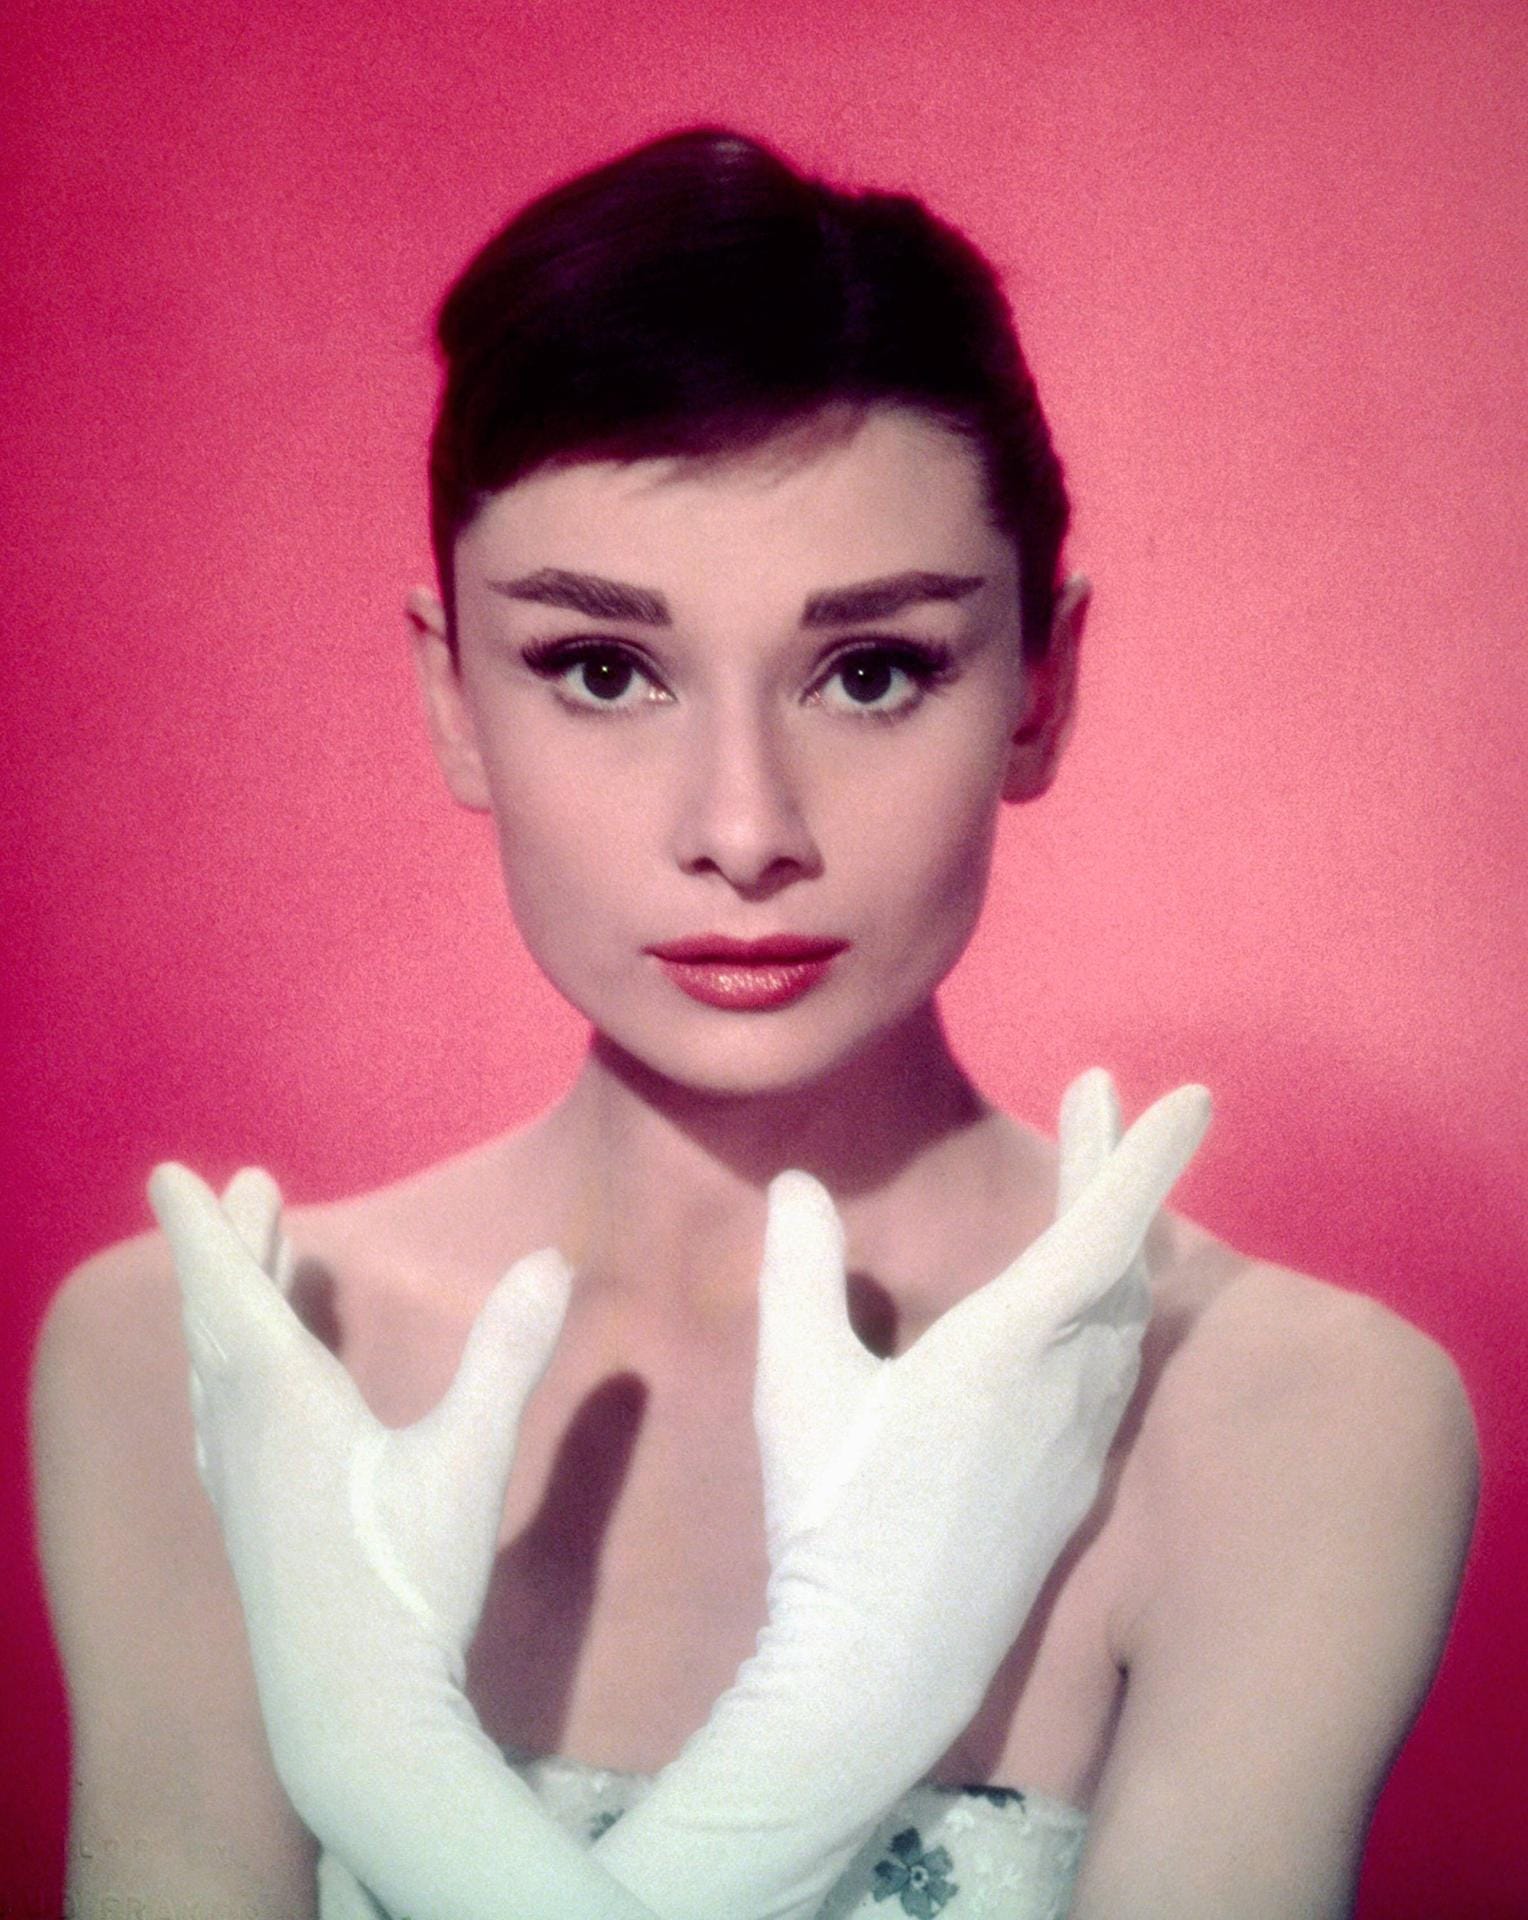 Audrey Hepburn (1929-1993): Kurven waren in den 50er-Jahren gefragt. Audrey Hepburn hatte keine – verzauberte aber mit ihrem kindlichen Charme. 1953 schnappte sie sich in der romantischen Komödie "Ein Herz und eine Krone" die Hauptrolle, für die eigentlich Liz Taylor im Gespräch war. In den 60er-Jahren wurde sie zum Schönheitsideal. Unvergessen ihre Verkörperung der Holly Golighty in "Frühstück bei Tiffany".